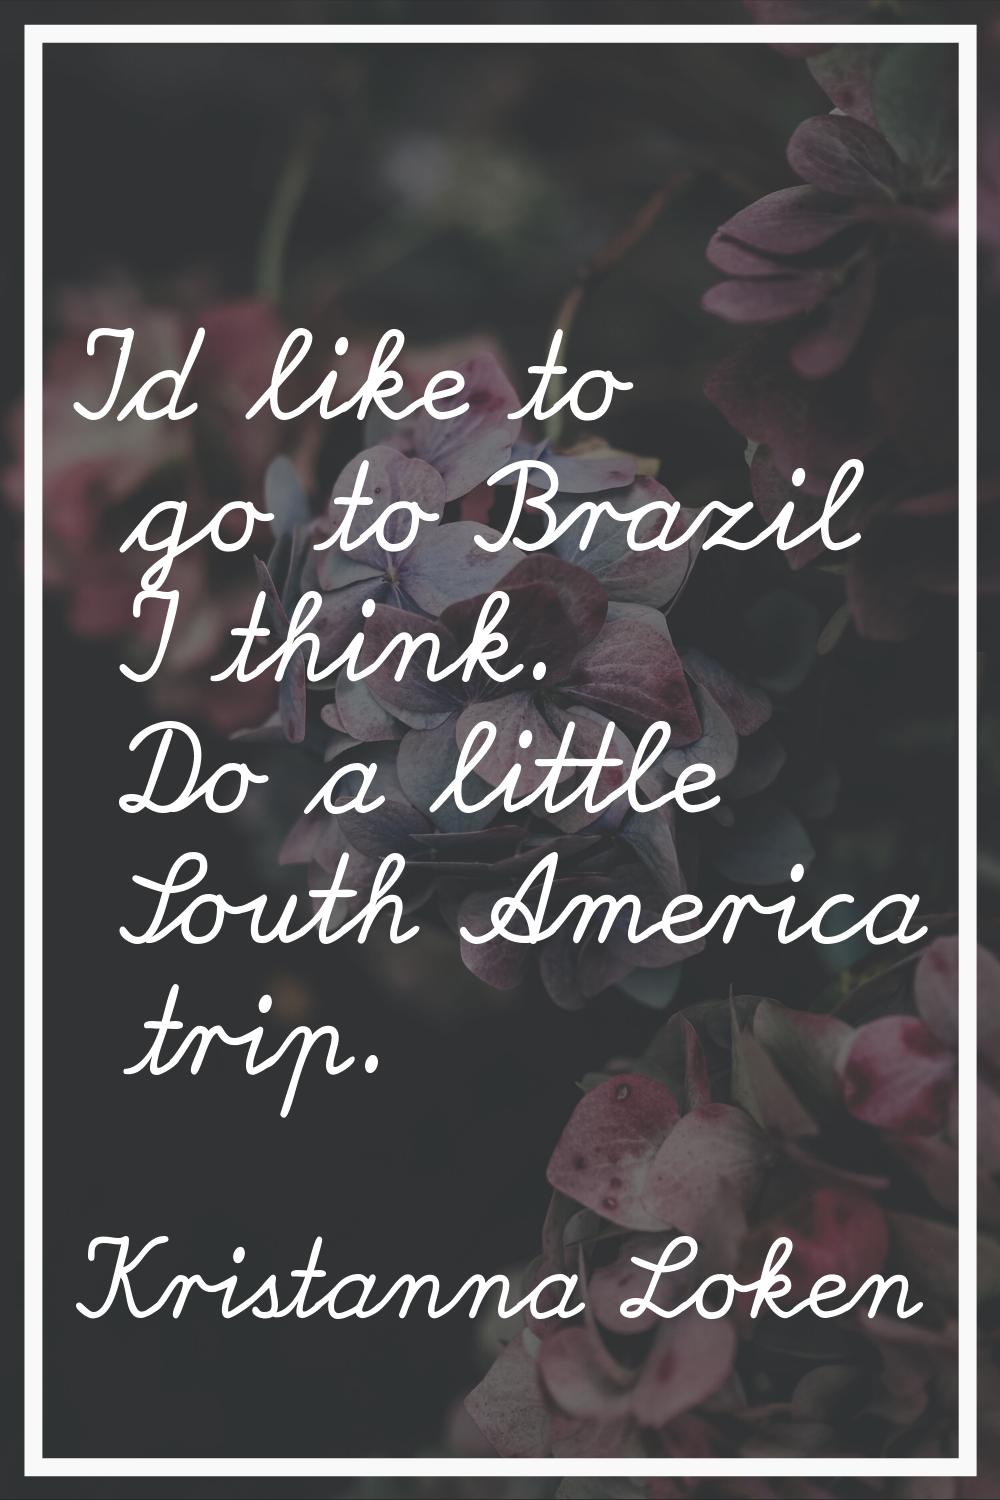 I'd like to go to Brazil I think. Do a little South America trip.